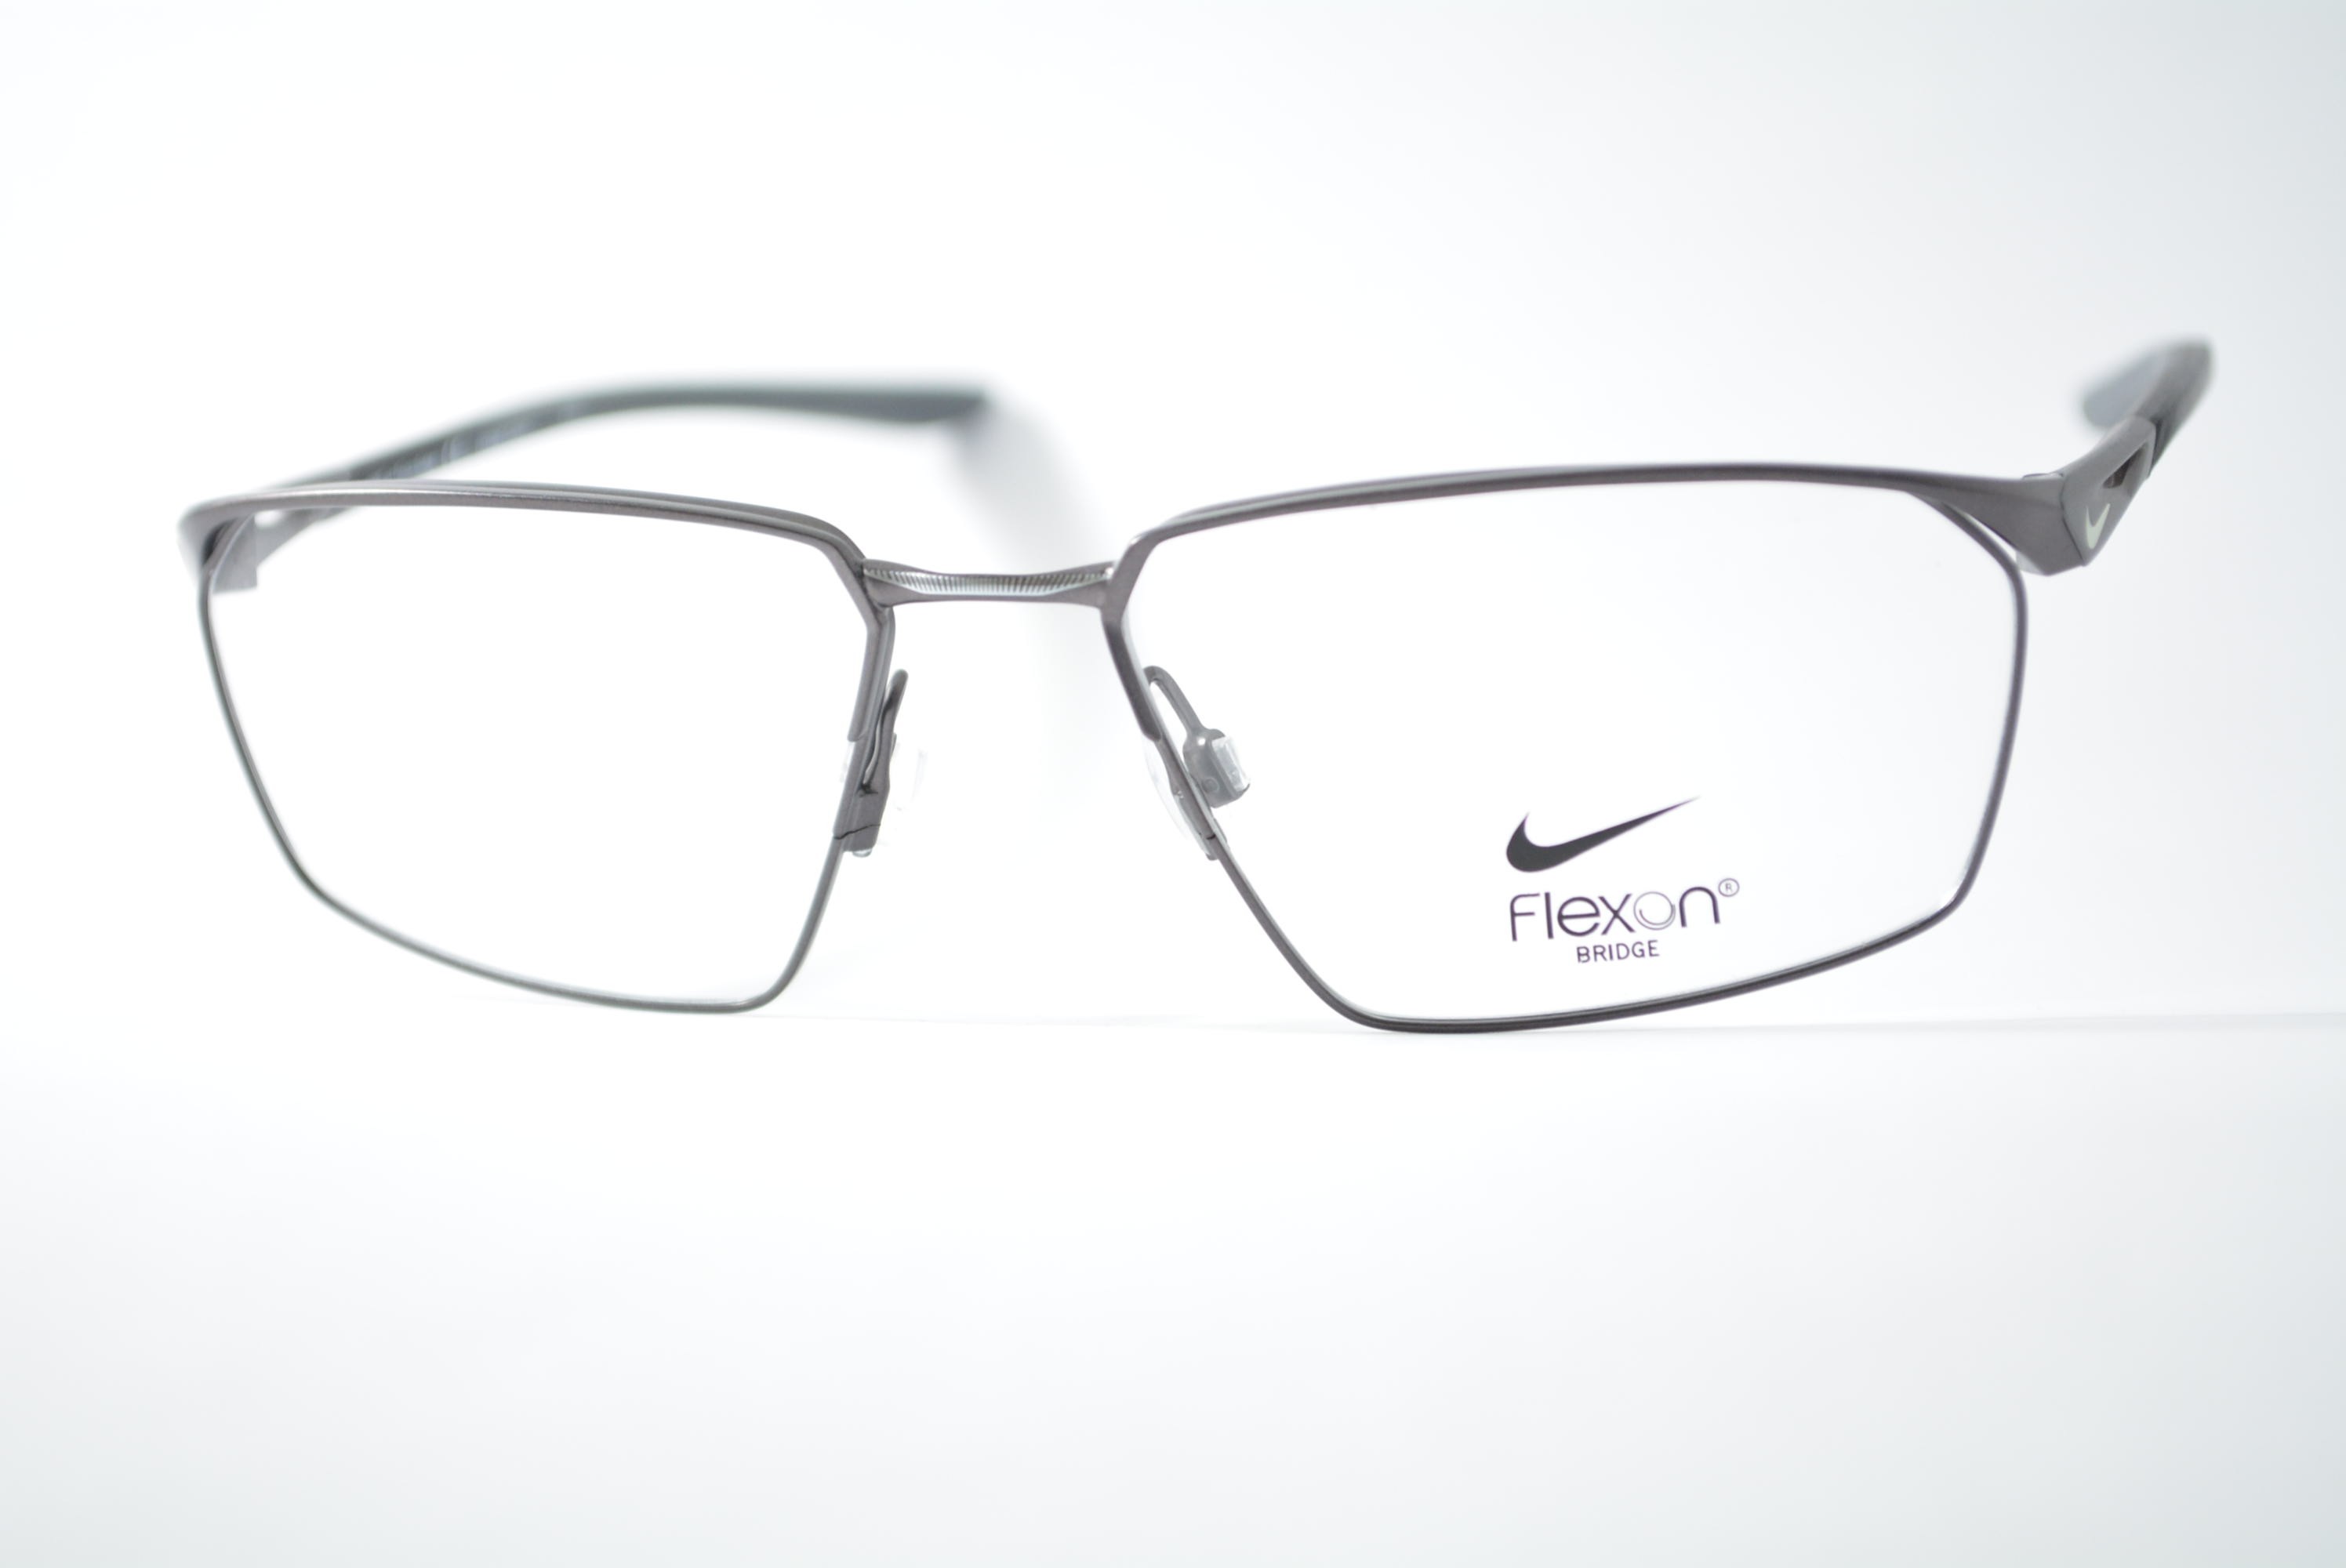 armação de óculos Nike mod 4311 071 flexon